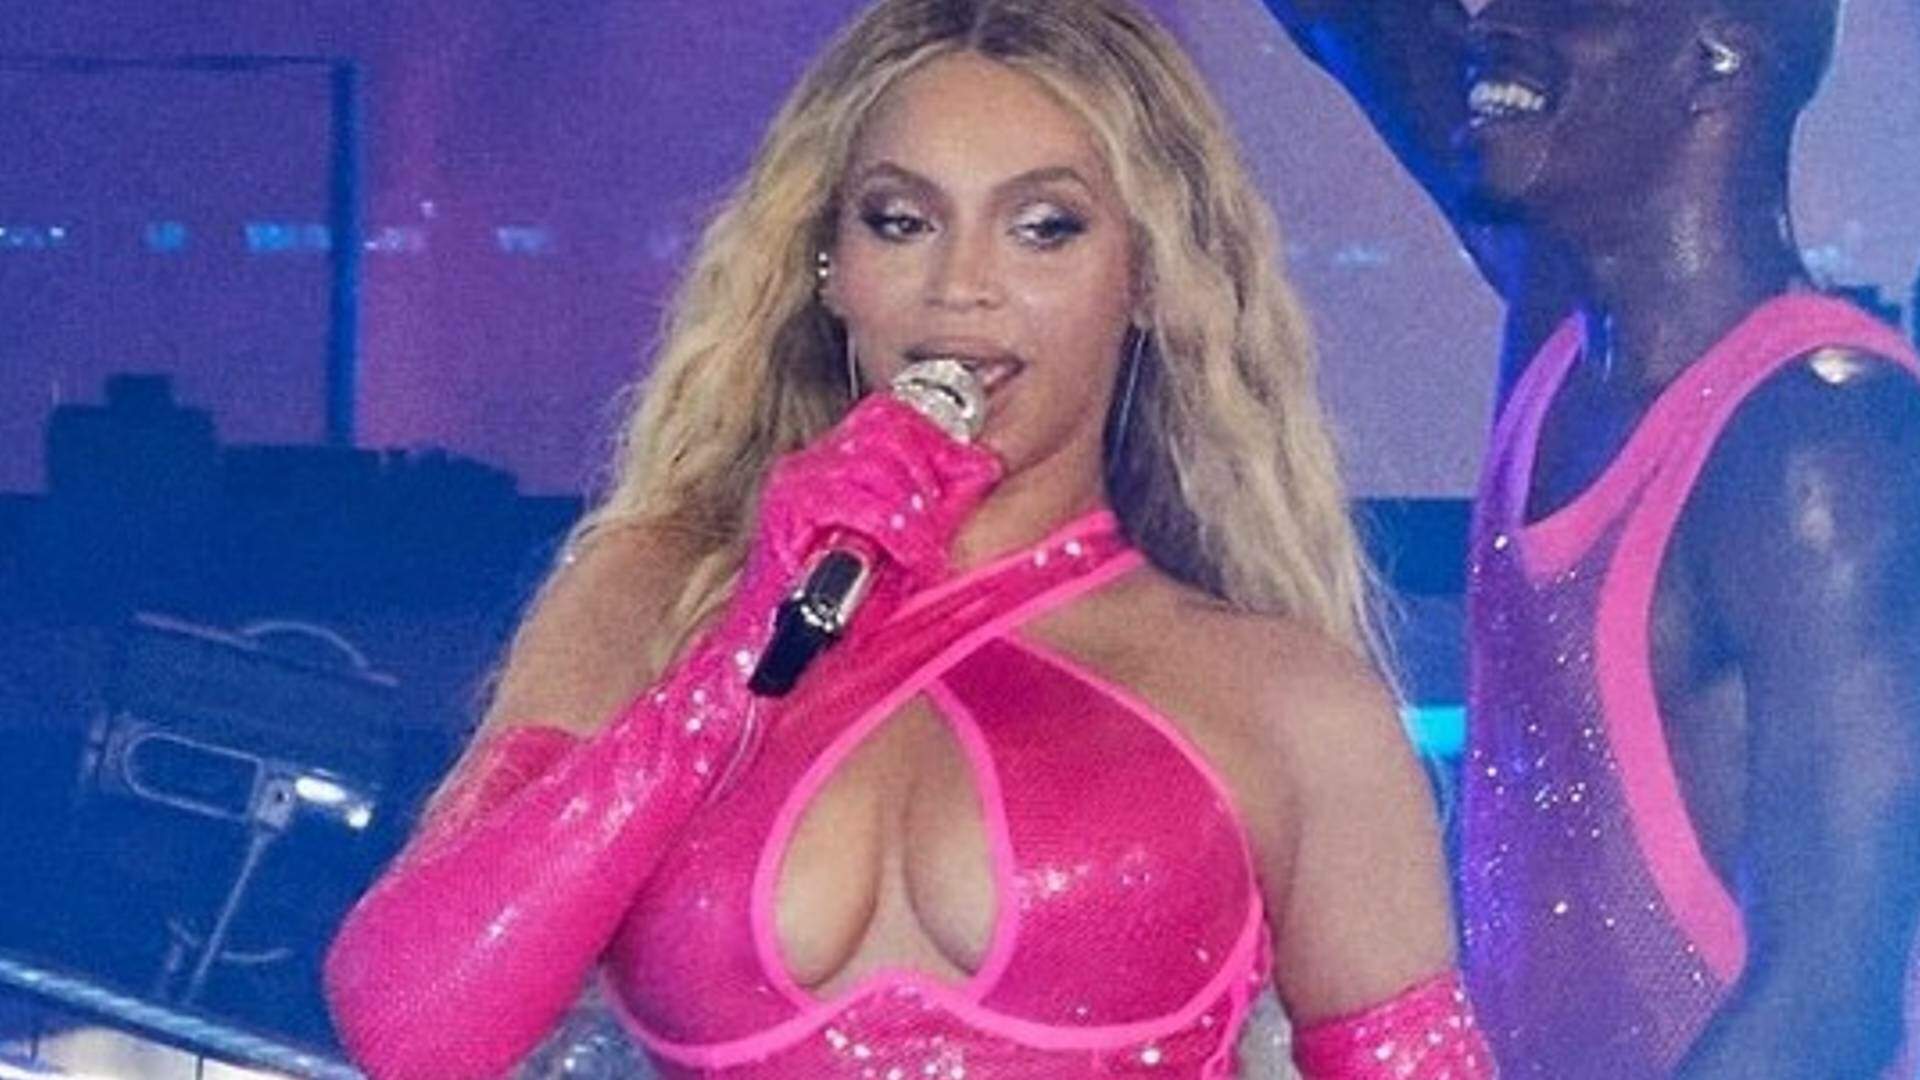 Com look decotado, Beyoncé passa por apuro e quase ‘paga peitinho’ durante performance musical: “Deu pra ver” - Metropolitana FM